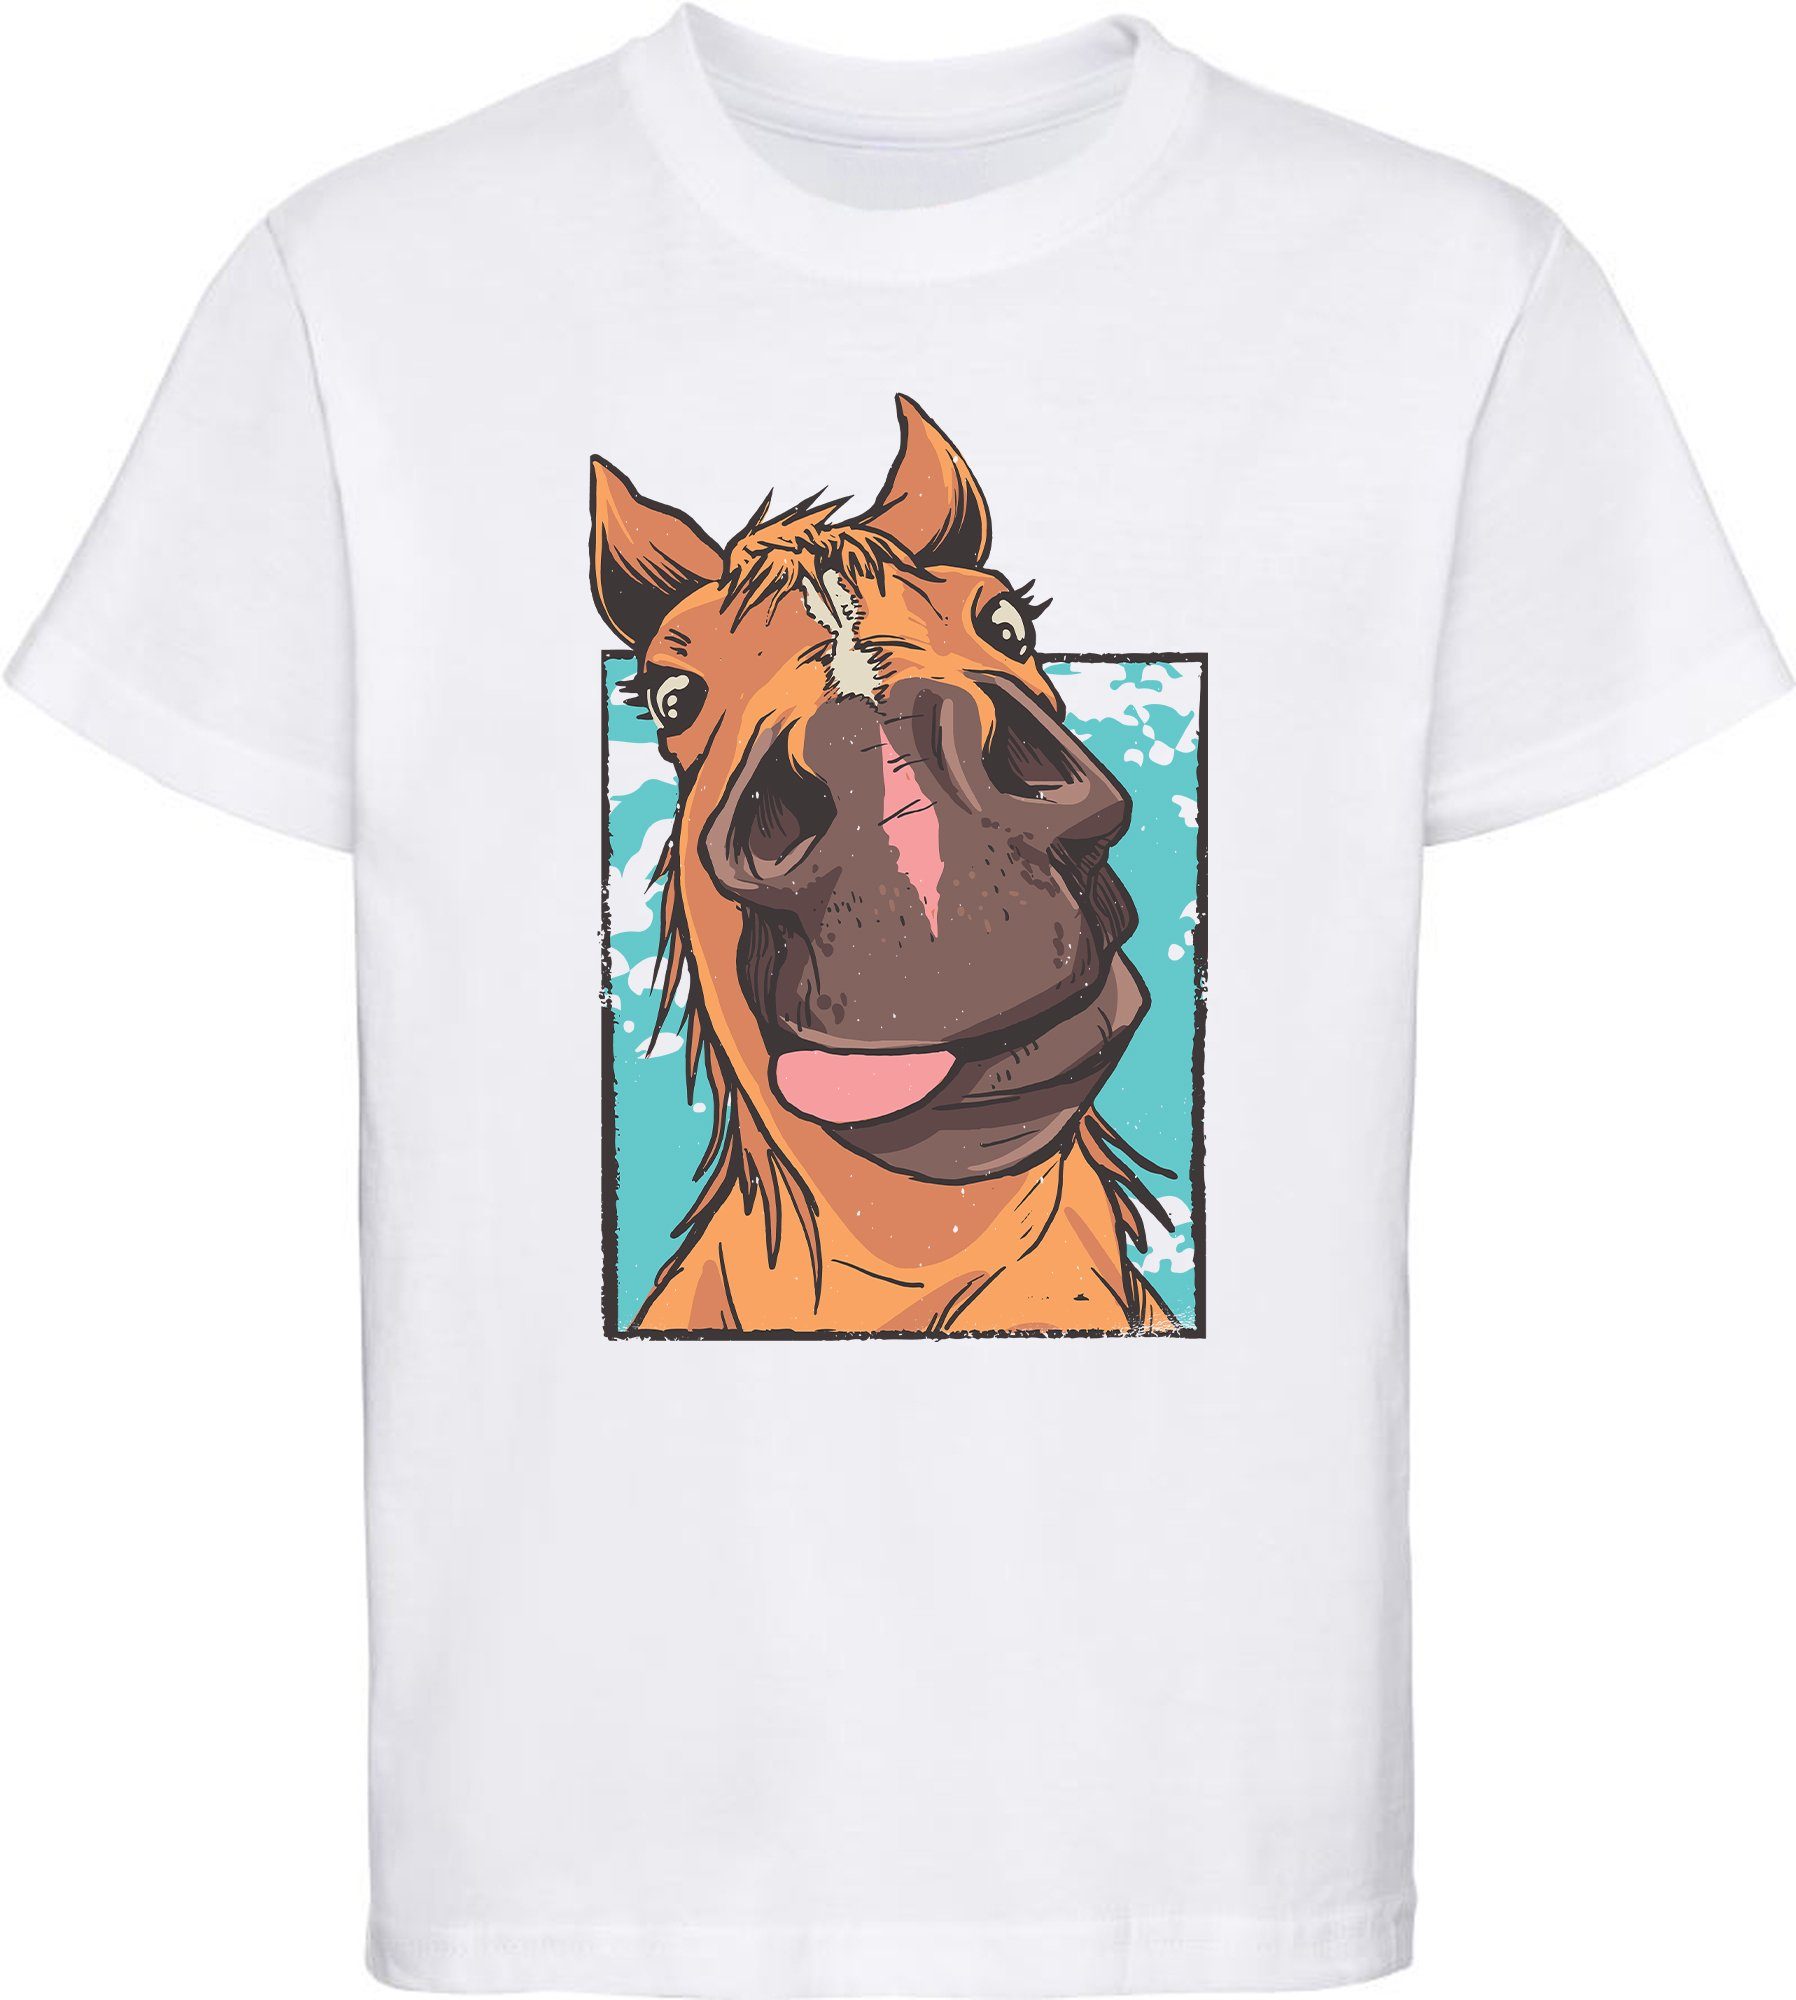 MyDesign24 Print-Shirt bedrucktes Kinder T-Shirt lustiger Pferdekopf mit Zunge Baumwollshirt mit Aufdruck, i153 weiss